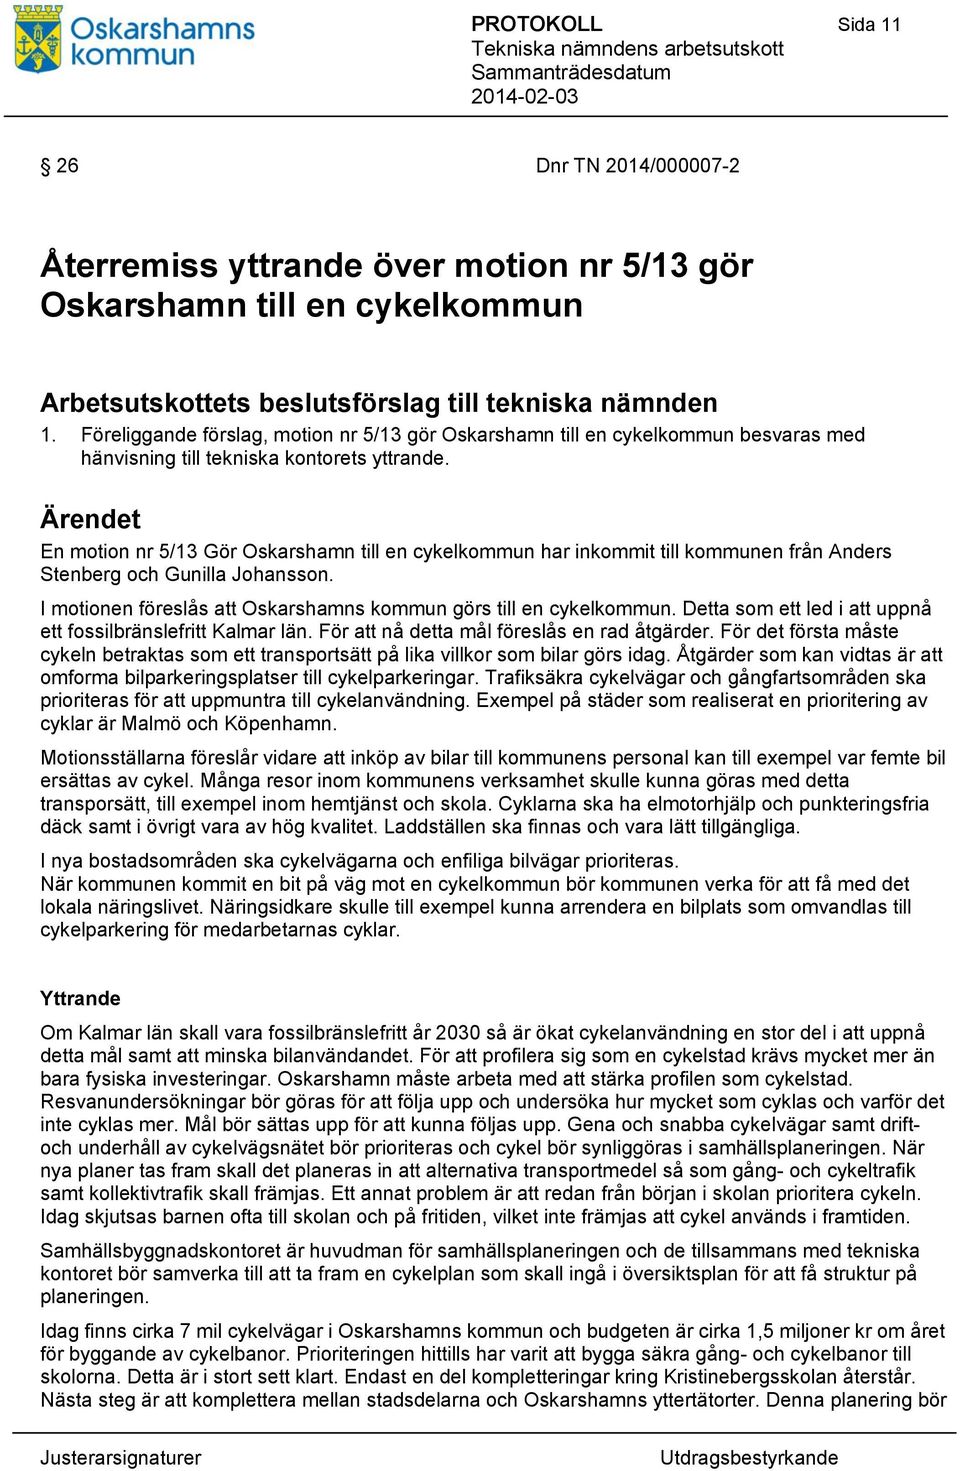 En motion nr 5/13 Gör Oskarshamn till en cykelkommun har inkommit till kommunen från Anders Stenberg och Gunilla Johansson. I motionen föreslås att Oskarshamns kommun görs till en cykelkommun.